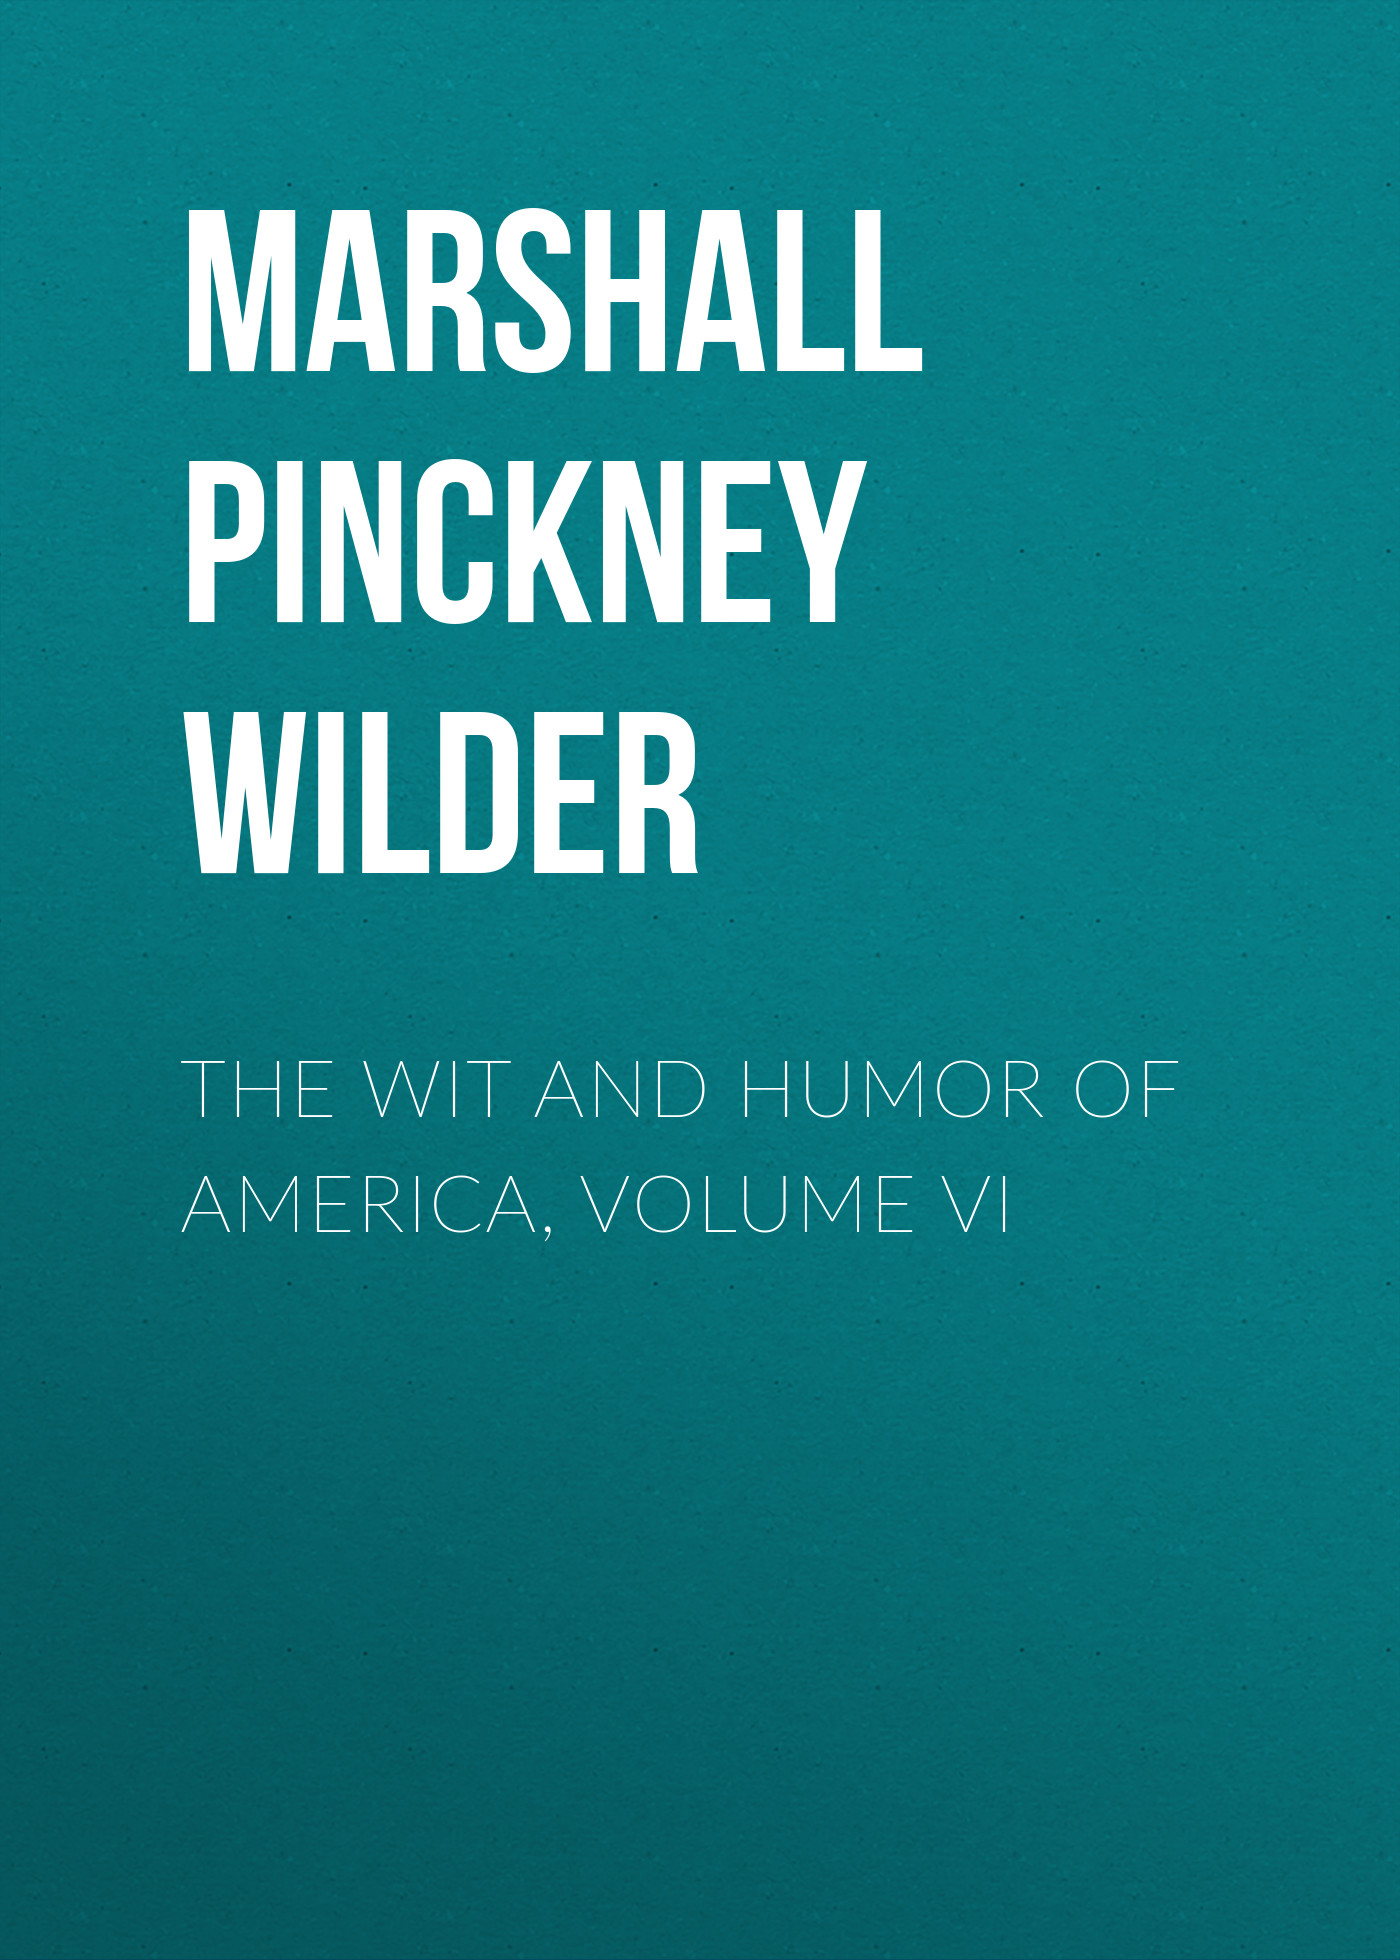 Книга  The Wit and Humor of America, Volume VI созданная Marshall Pinckney Wilder может относится к жанру зарубежная компьютерная литература, зарубежный юмор, юмор и сатира. Стоимость электронной книги The Wit and Humor of America, Volume VI с идентификатором 36322364 составляет  руб.